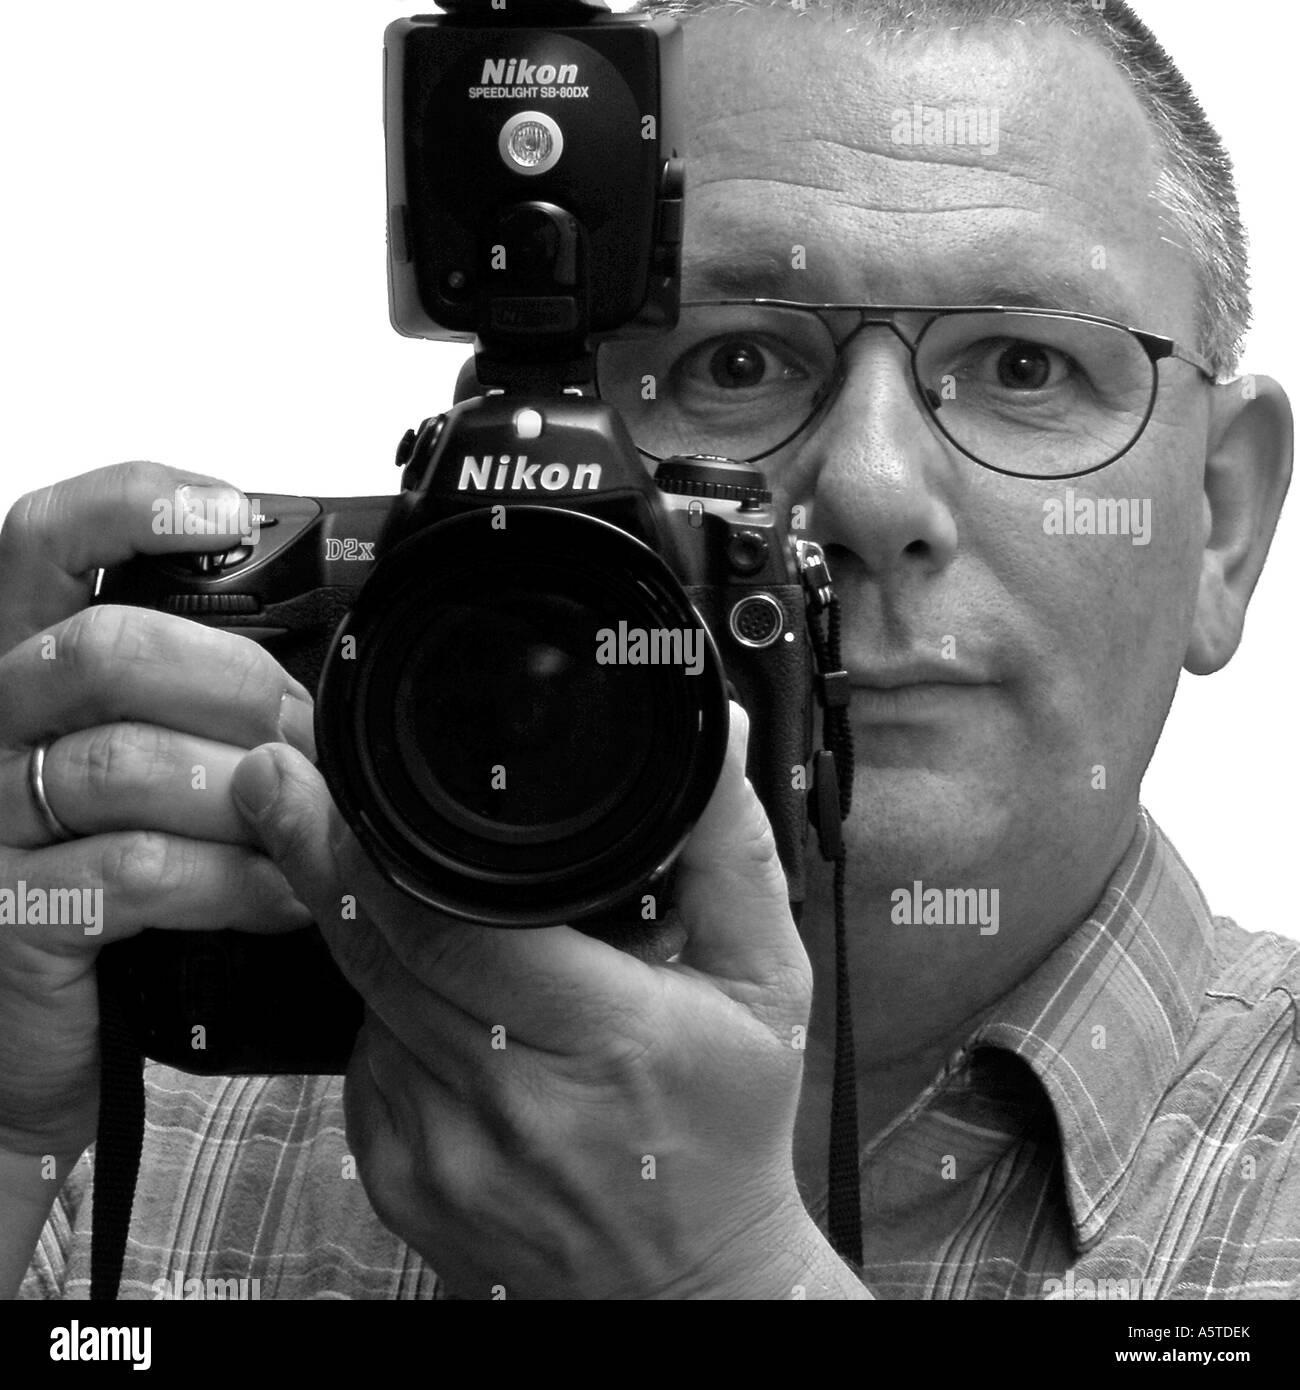 Nikon D2x Stockfotos und -bilder Kaufen - Alamy